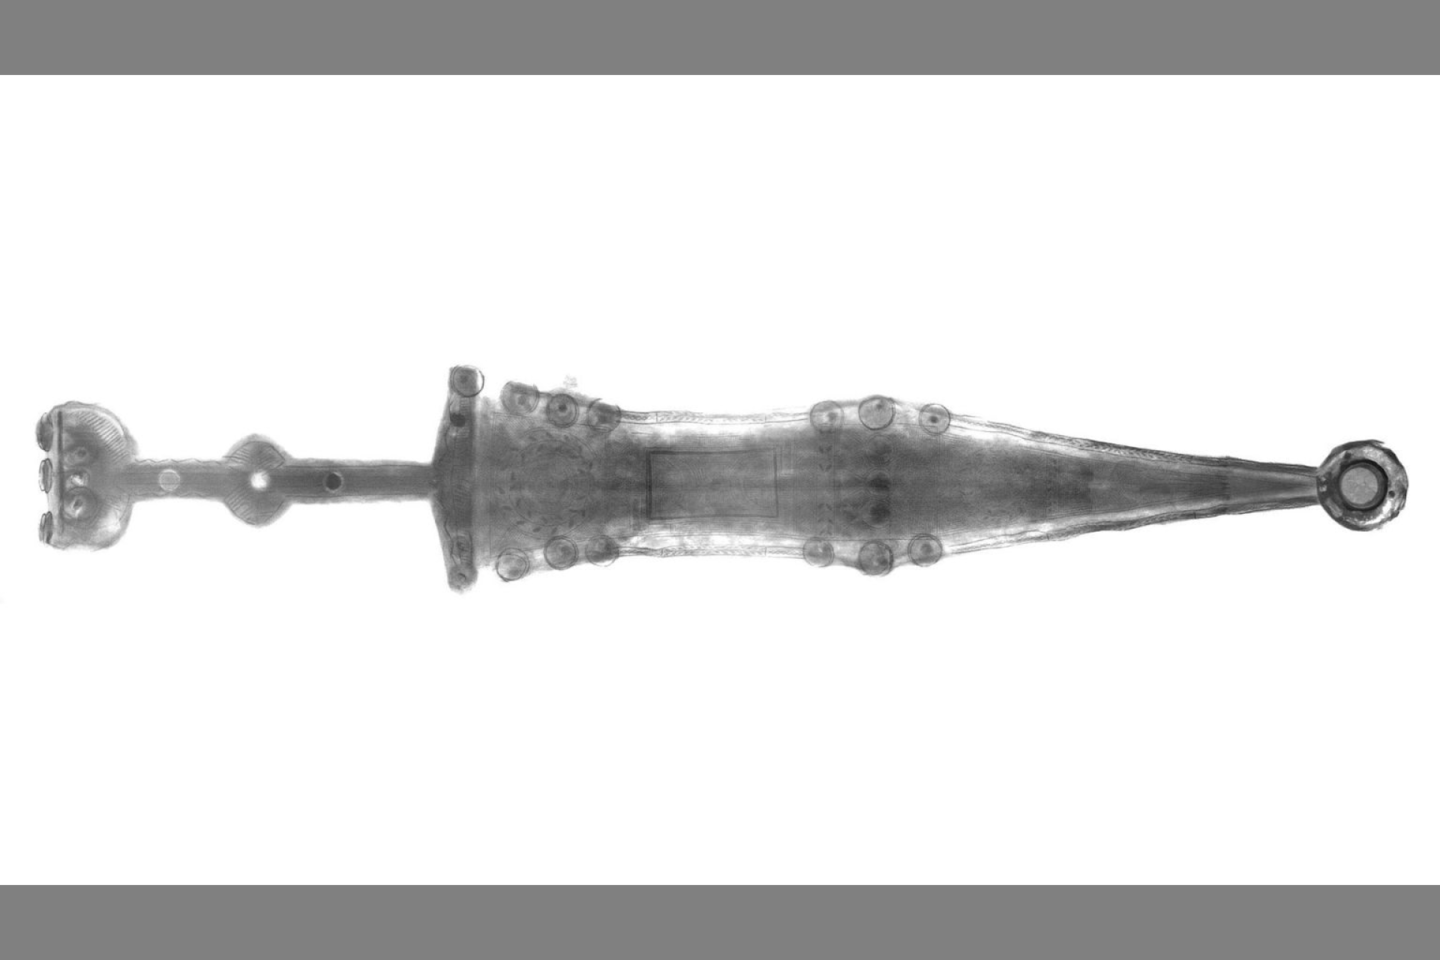  Peršvietus radinį rentgeno spinduliais, atlikus jo kompiuterinę tomografiją ir galiausiai restauravus ginklą, archeologai negalėjo atsigrožėti radiniu.<br> LWL nuotr.